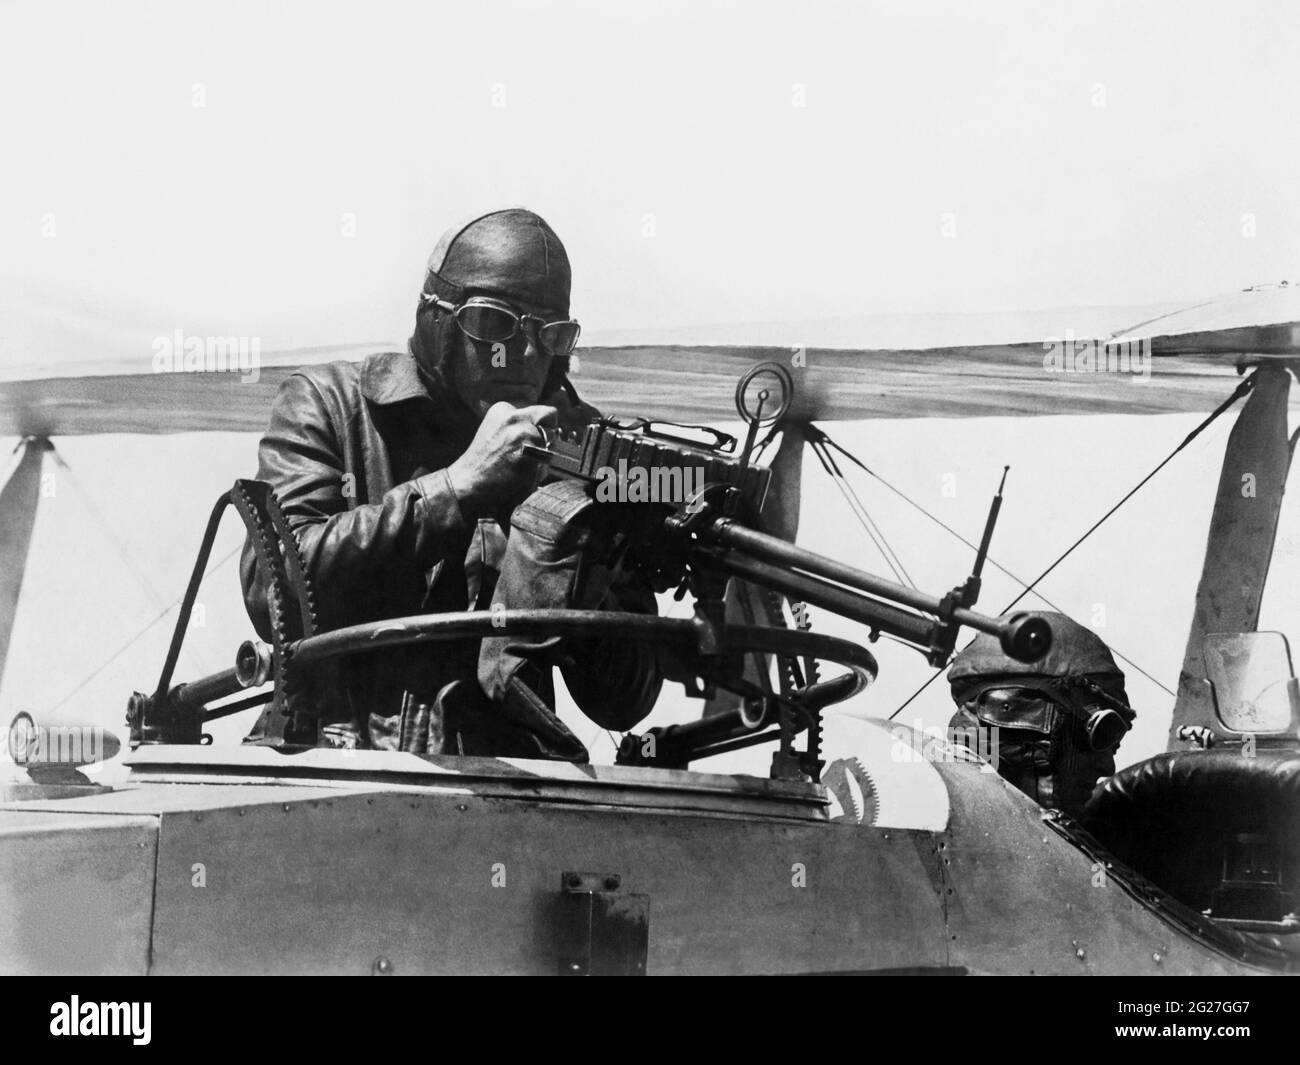 Gli accoppiamenti machinisti del capo della marina degli Stati Uniti che prendono la pratica della pistola della macchina nel loro aereo durante la prima guerra mondiale. Foto Stock